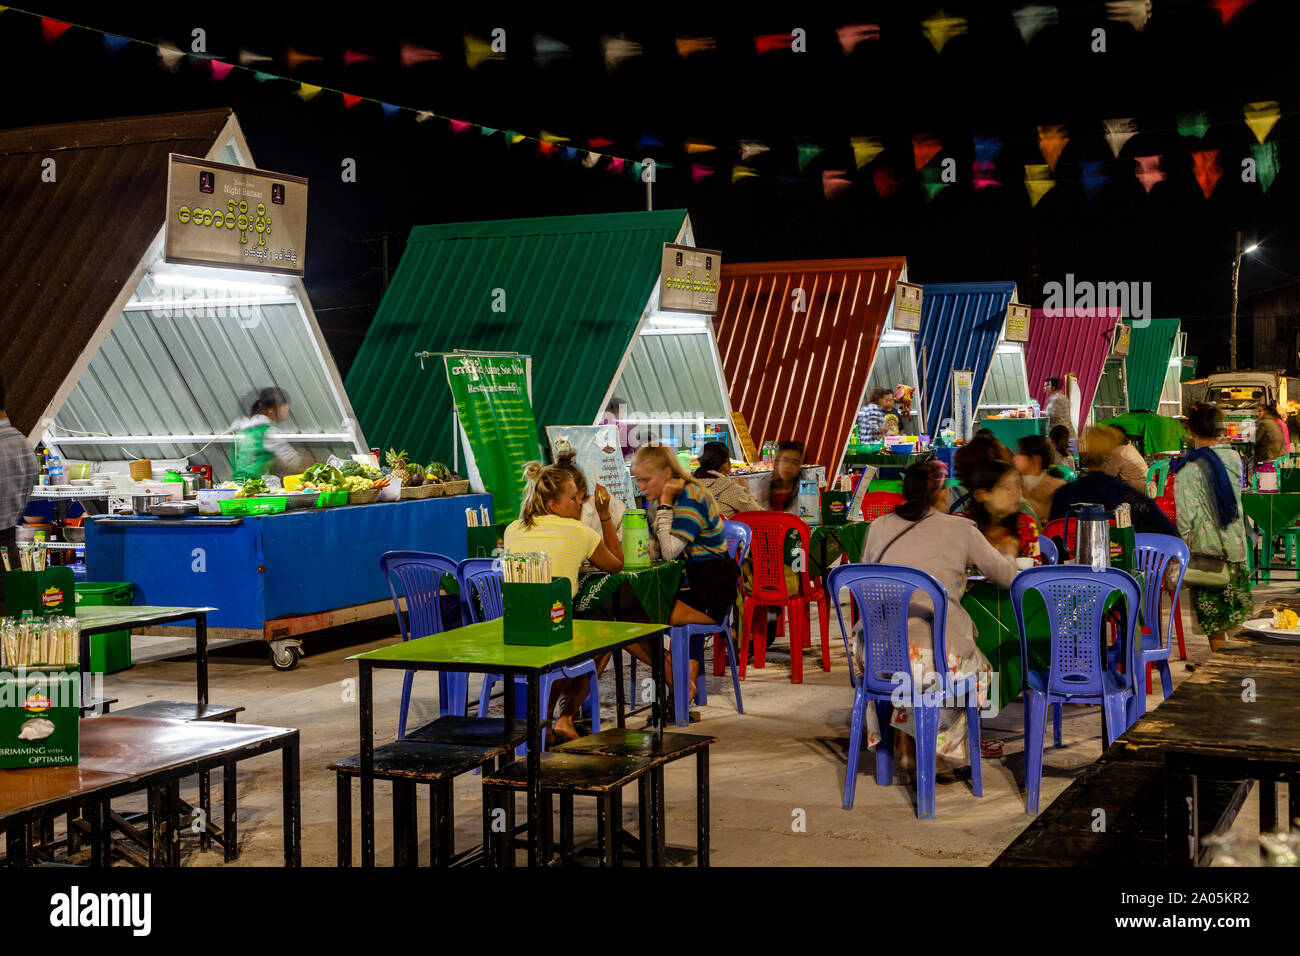 La population locale et les touristes de manger des aliments de rue à des tables dans le marché de nuit, Nyaung Shwe, le lac Inle, l'État de Shan, Myanmar. Banque D'Images